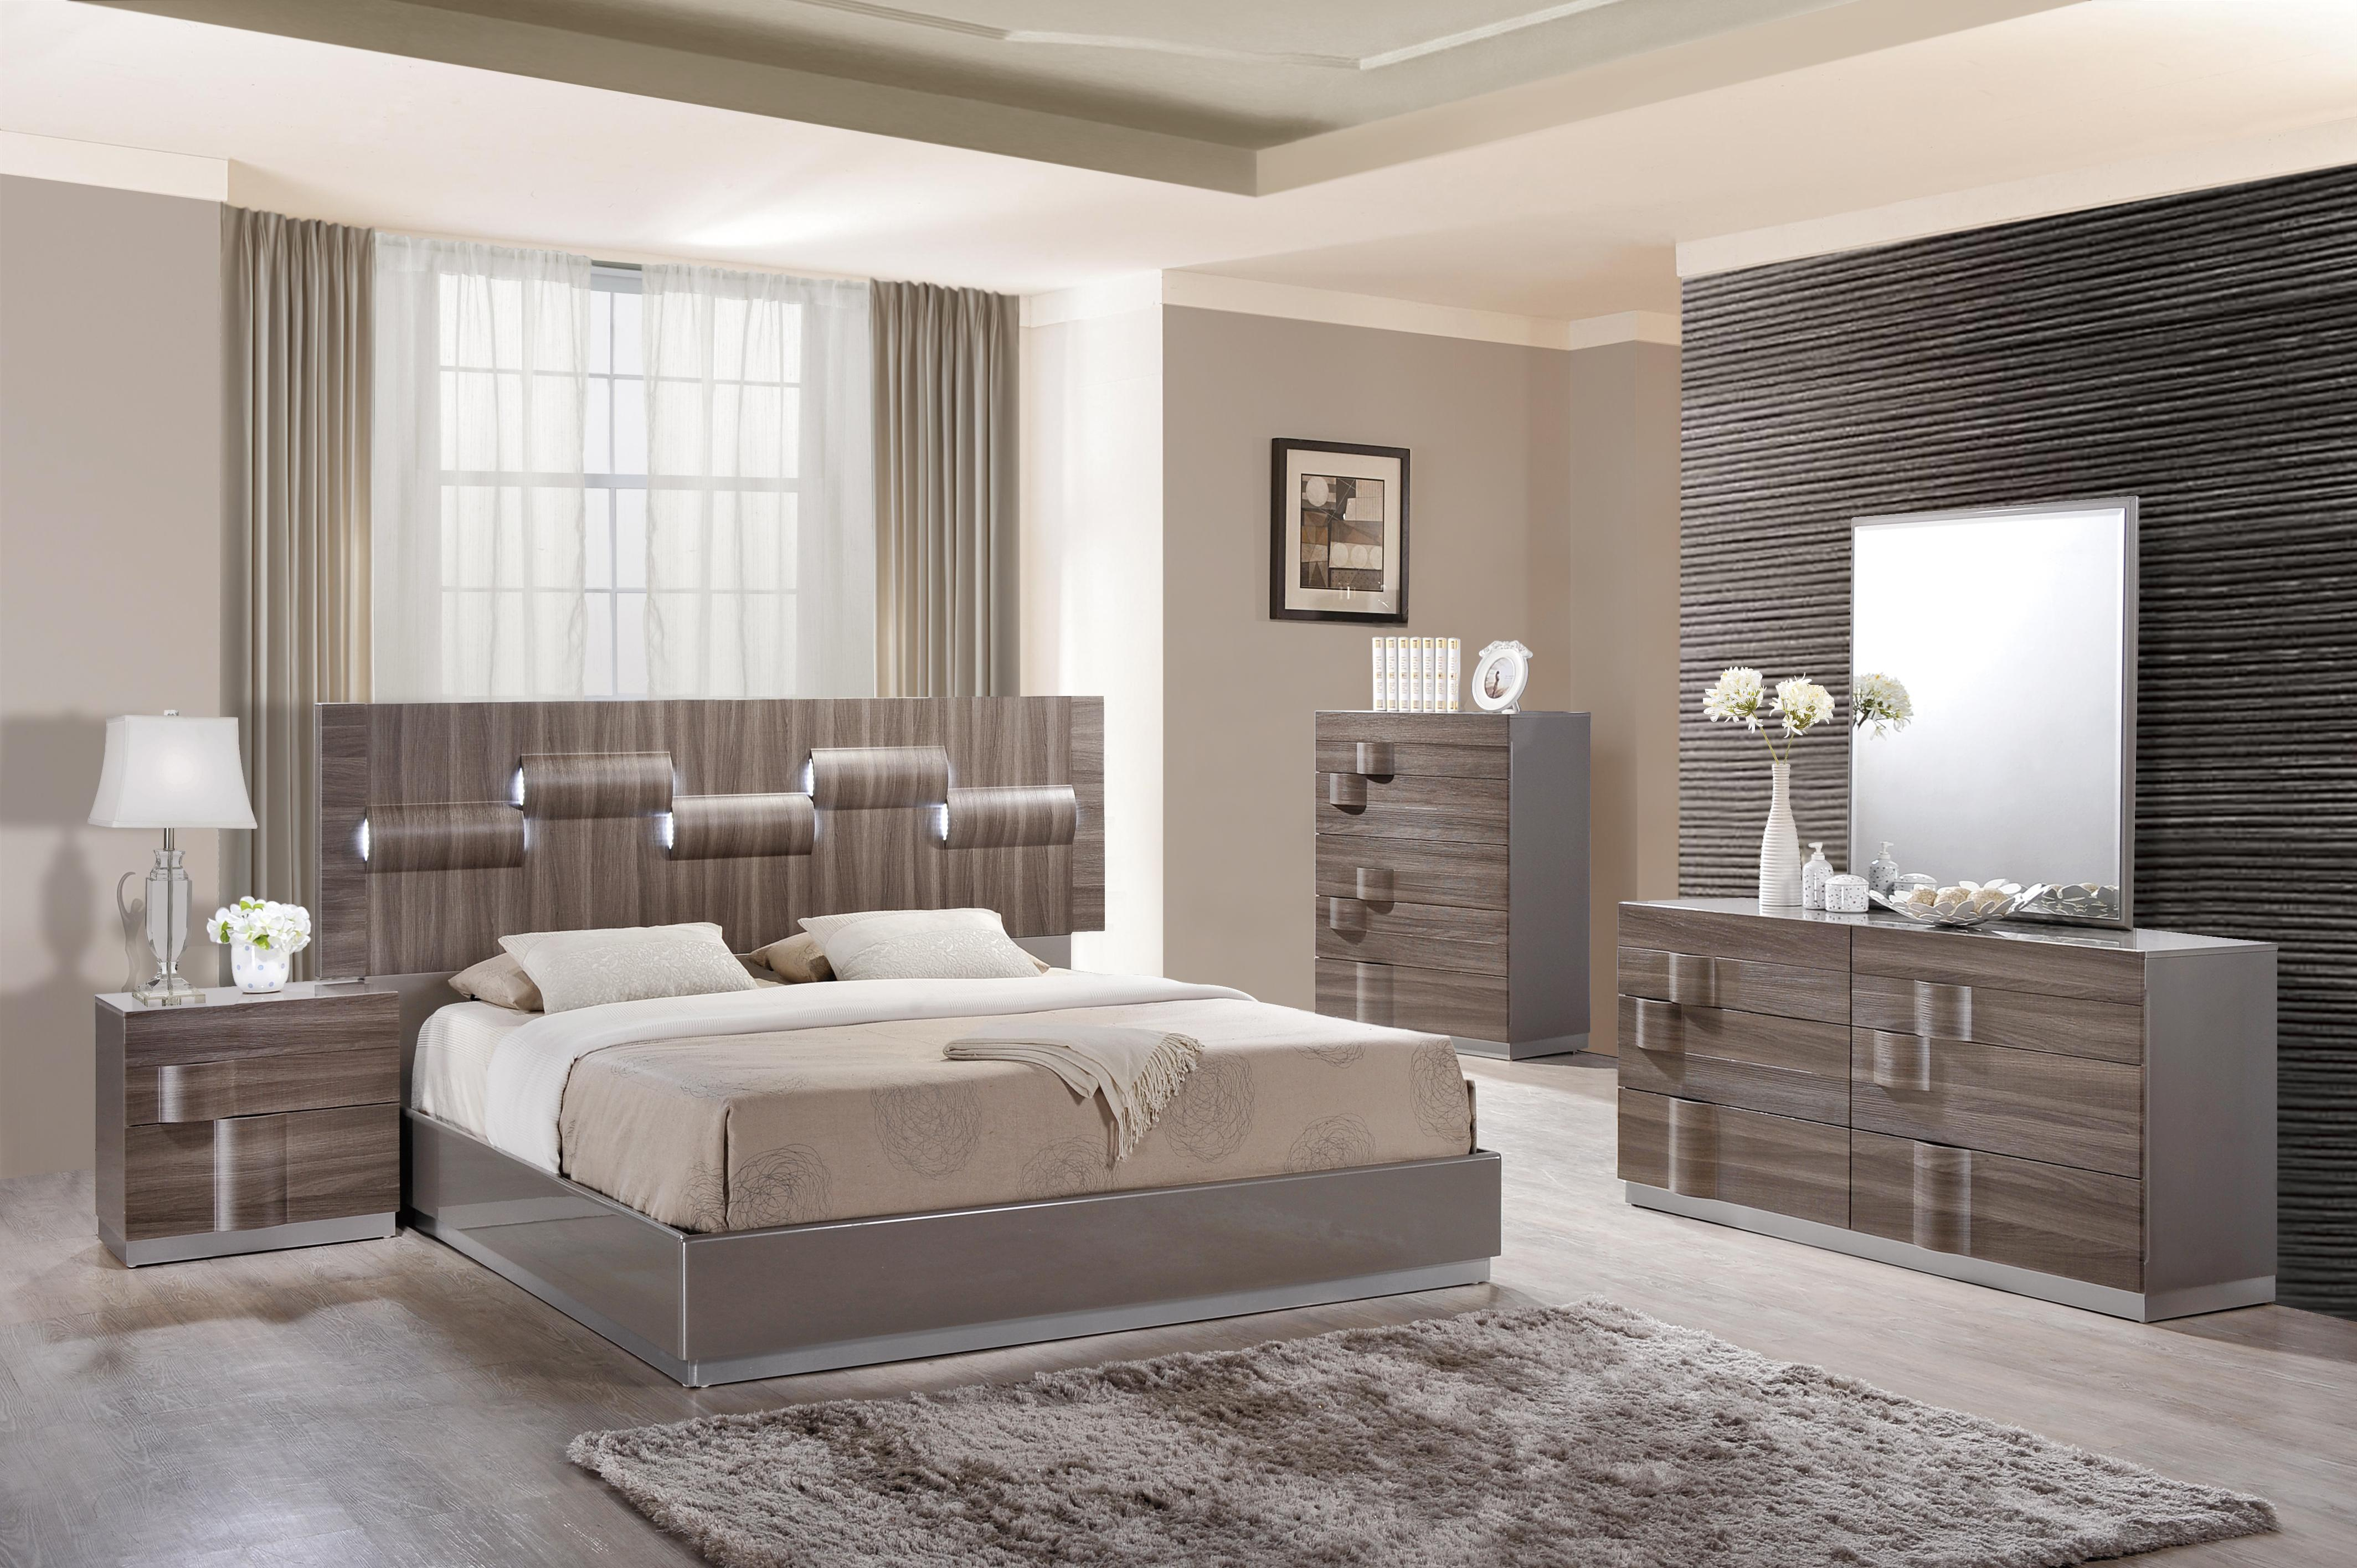 Glamorous Grey Zebra Wood Led Bedroom Set pertaining to size 4256 X 2832